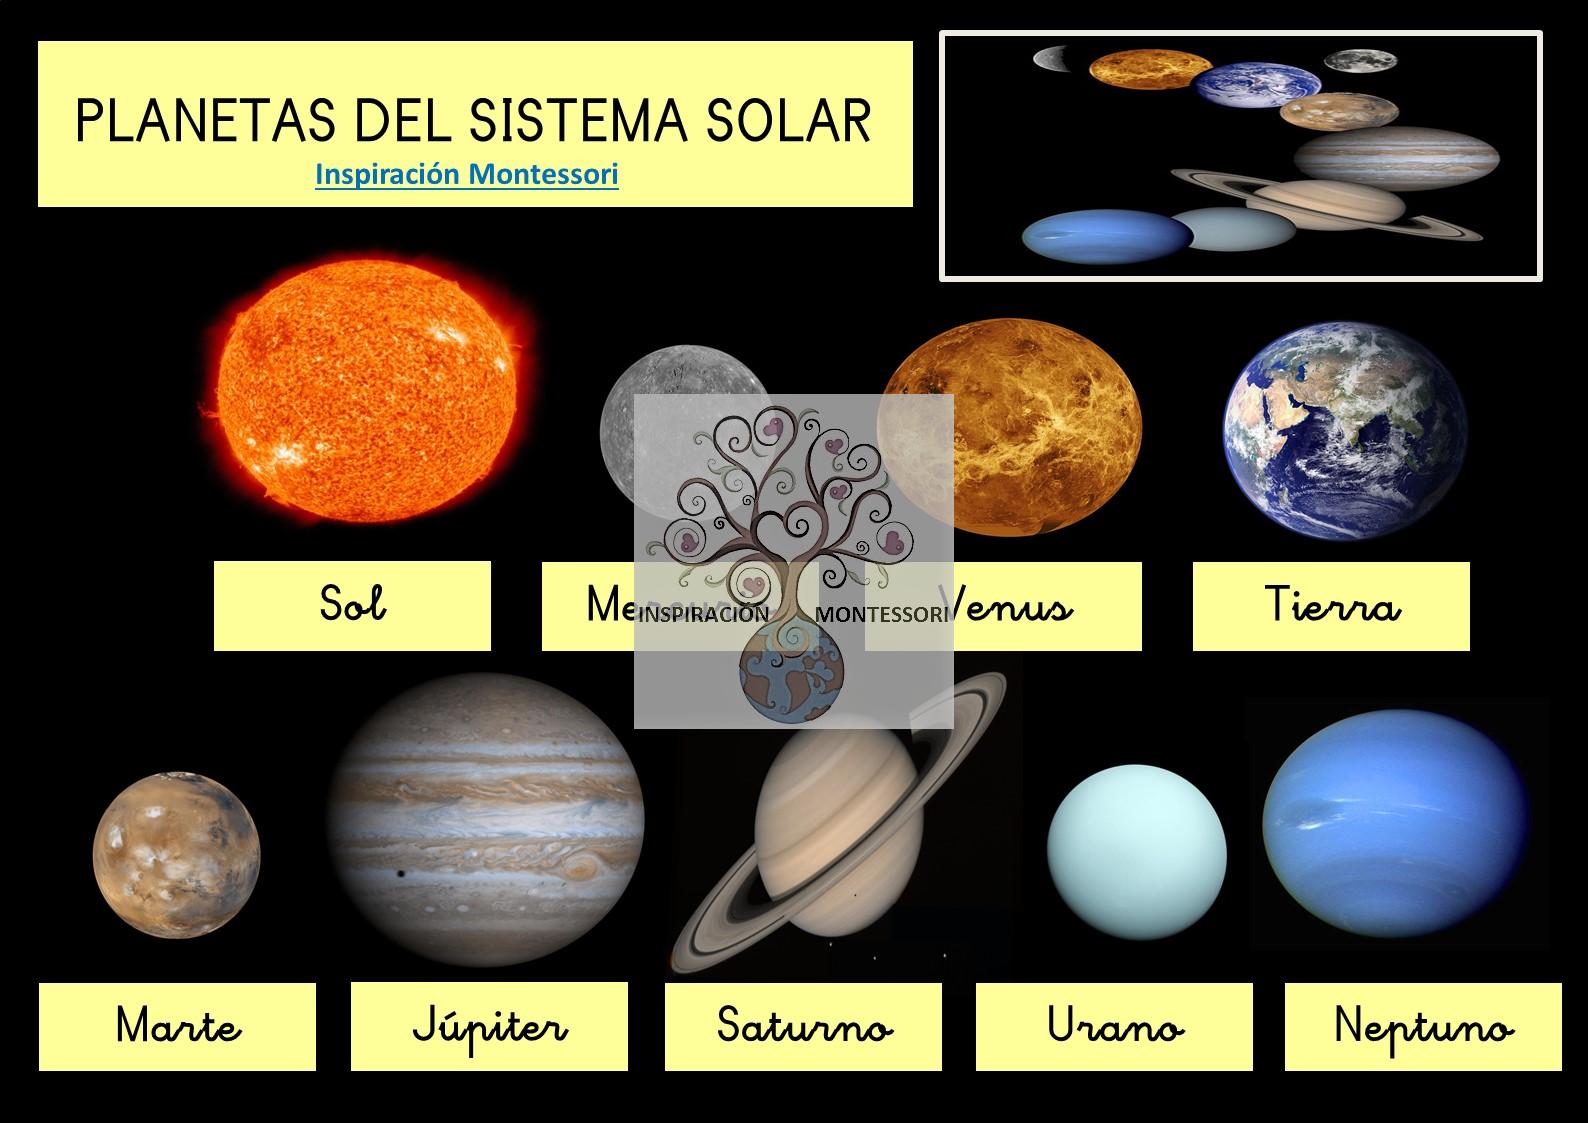 Los planetas del sistema solar